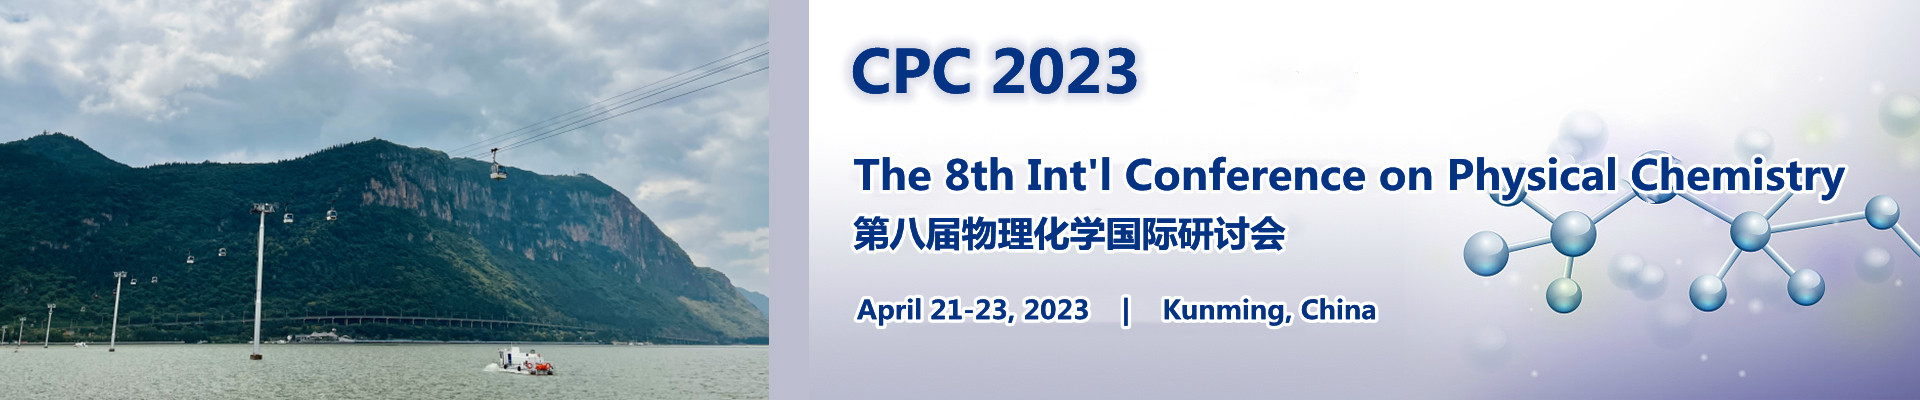 第八届物理化学国际研讨会(CPC 2023)